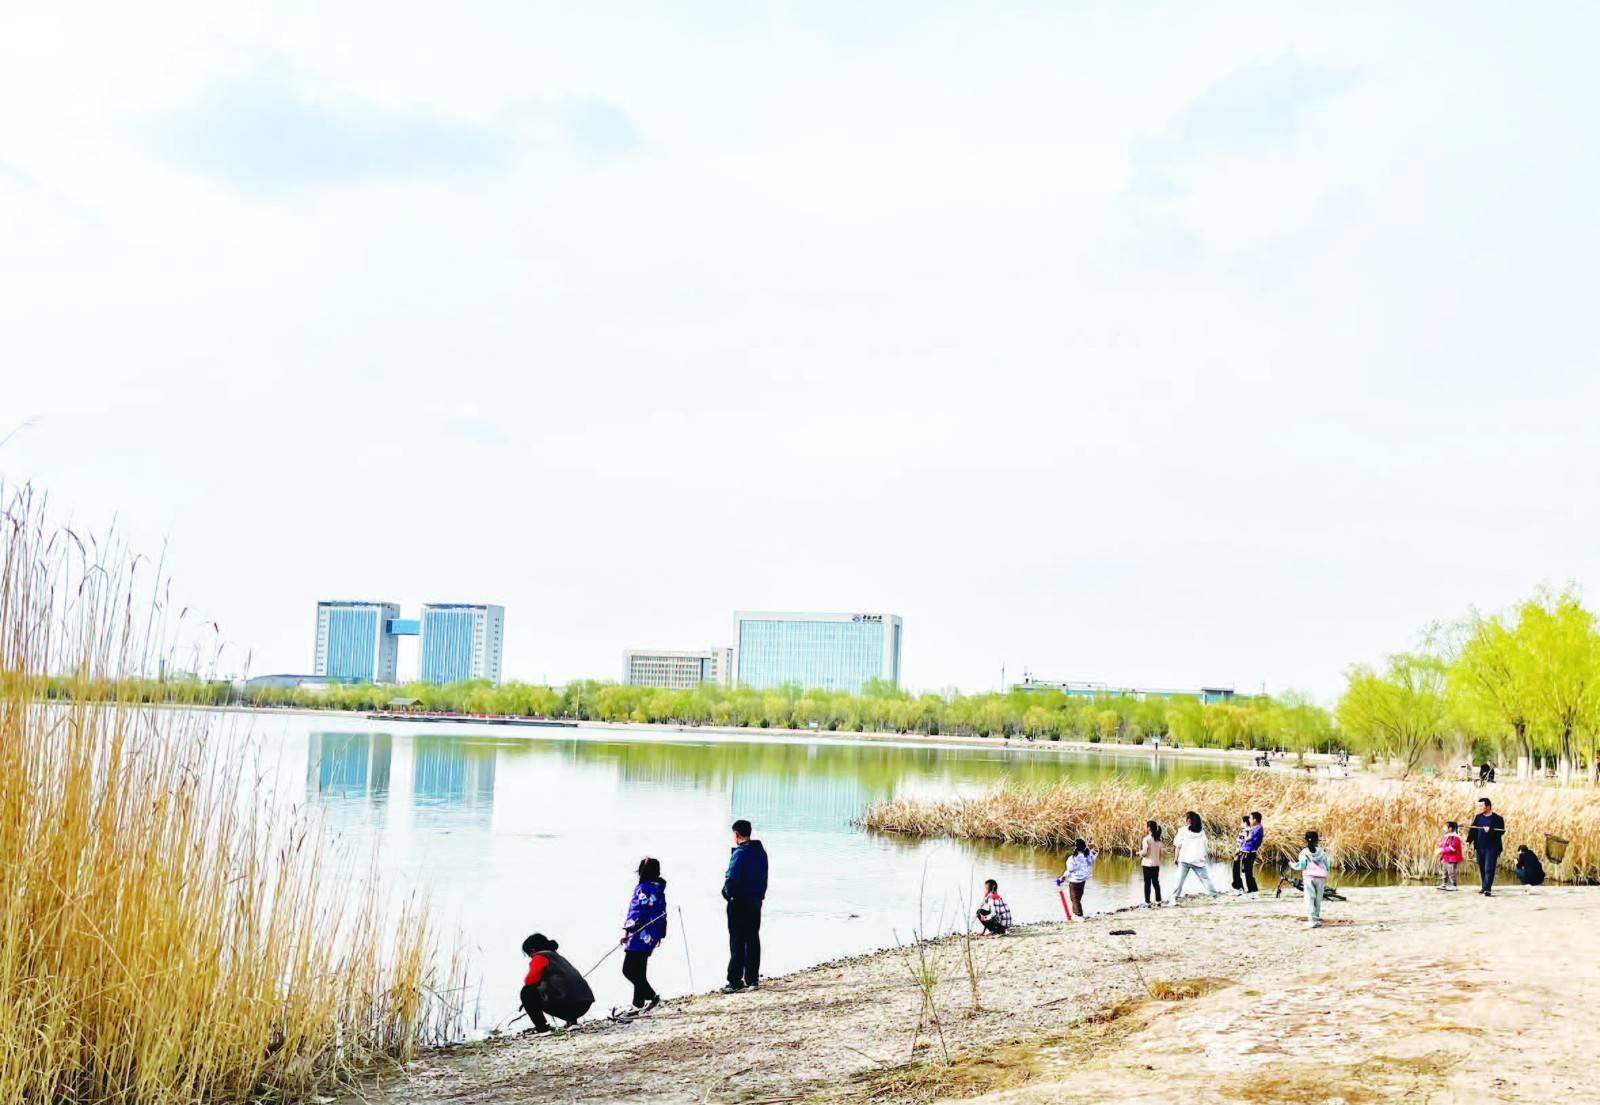 金水湖国家湿地公园风光旖旎,假日里人们纷纷来到湖畔踏青游玩,尽情